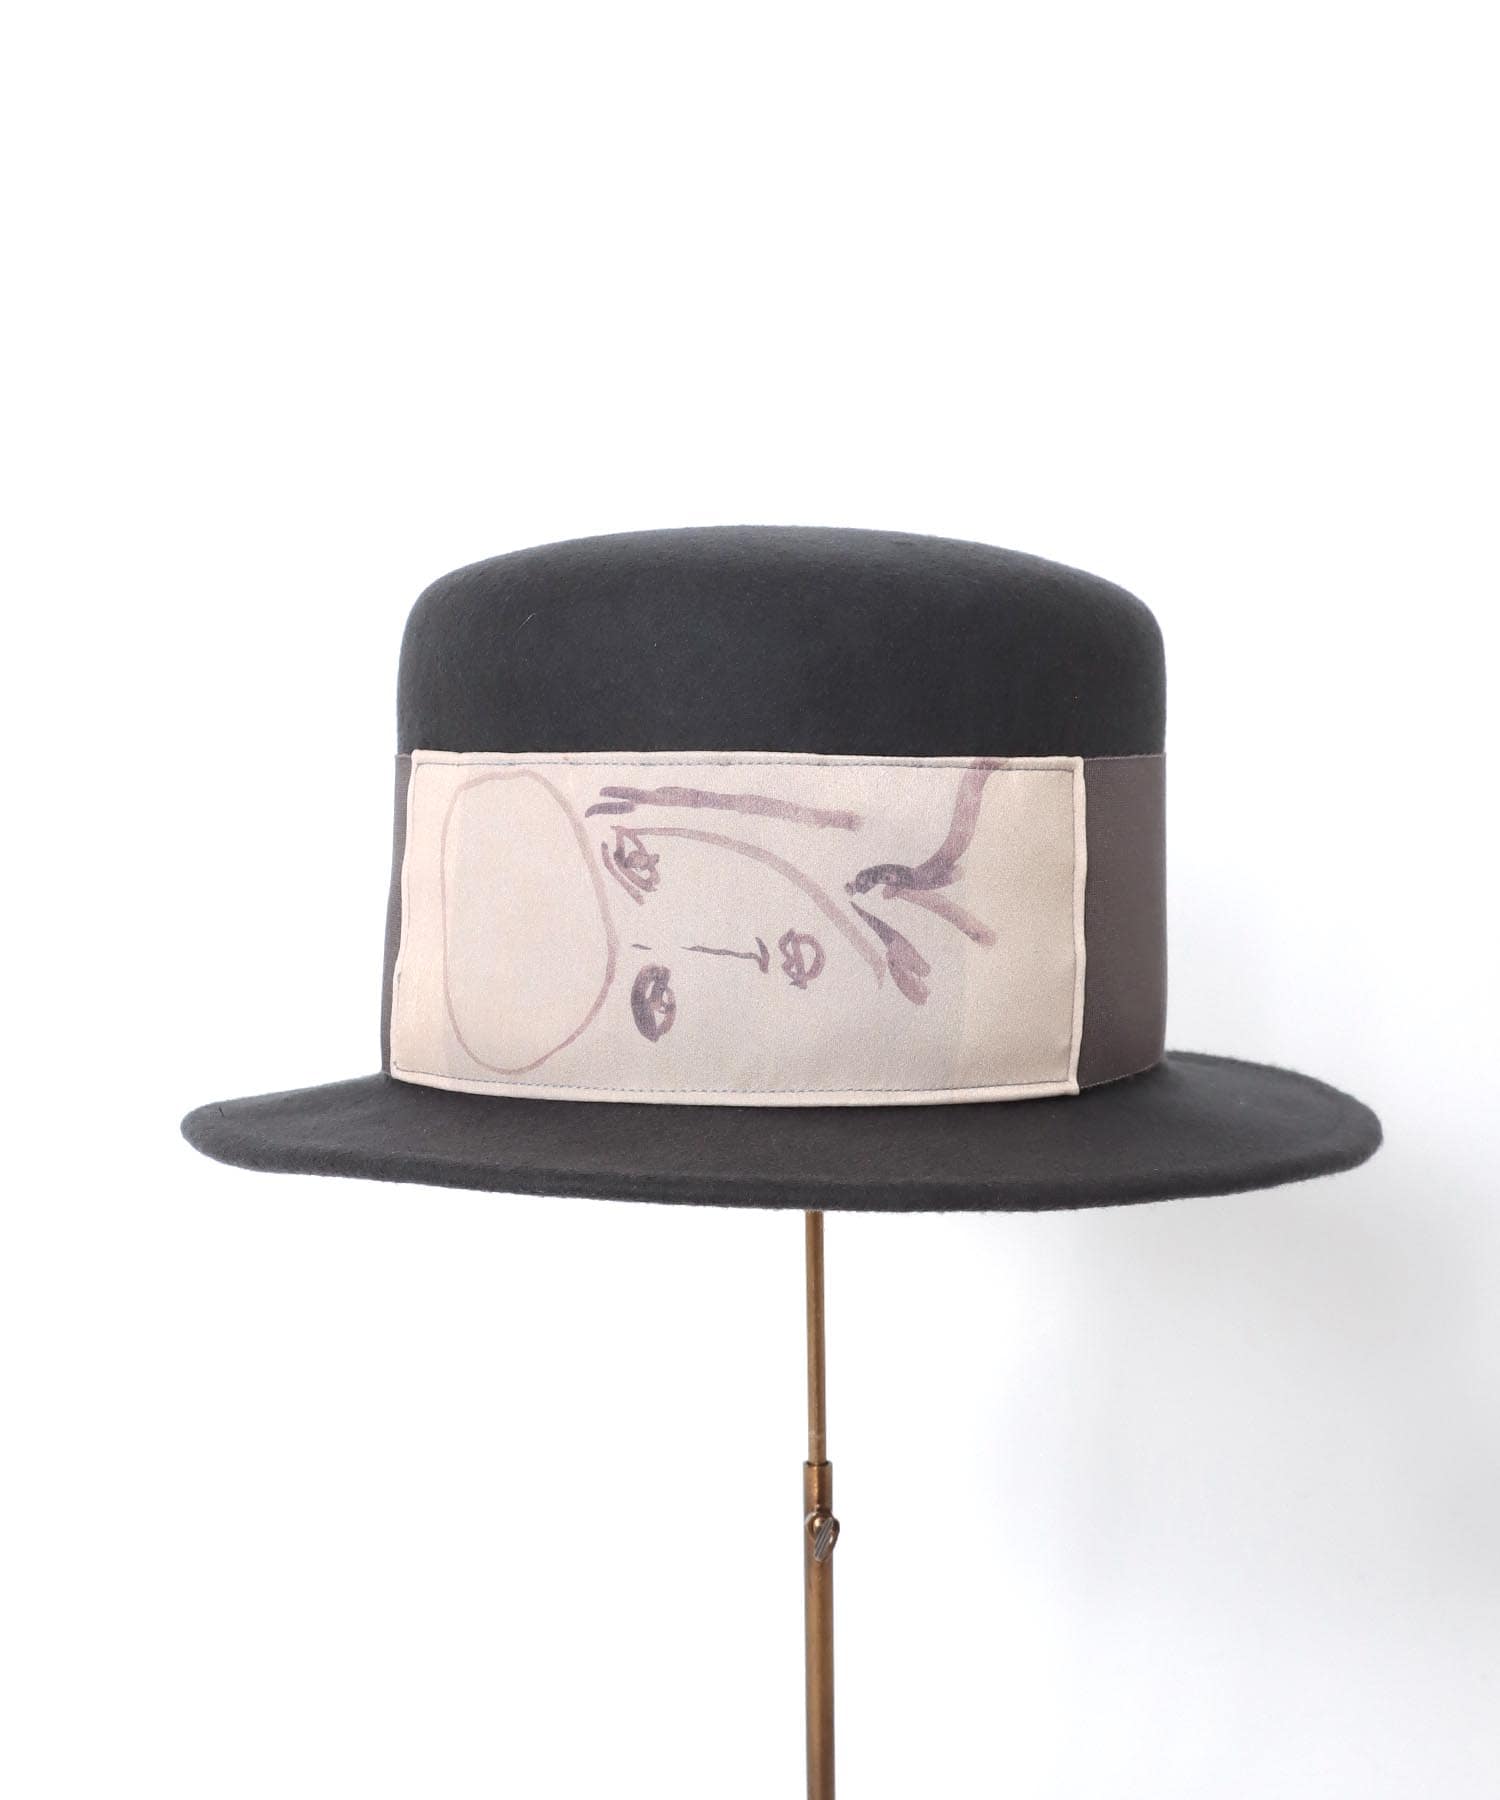 一部店舗限定》【Barairo no boushi / バラ色の帽子】肖像画のシルク